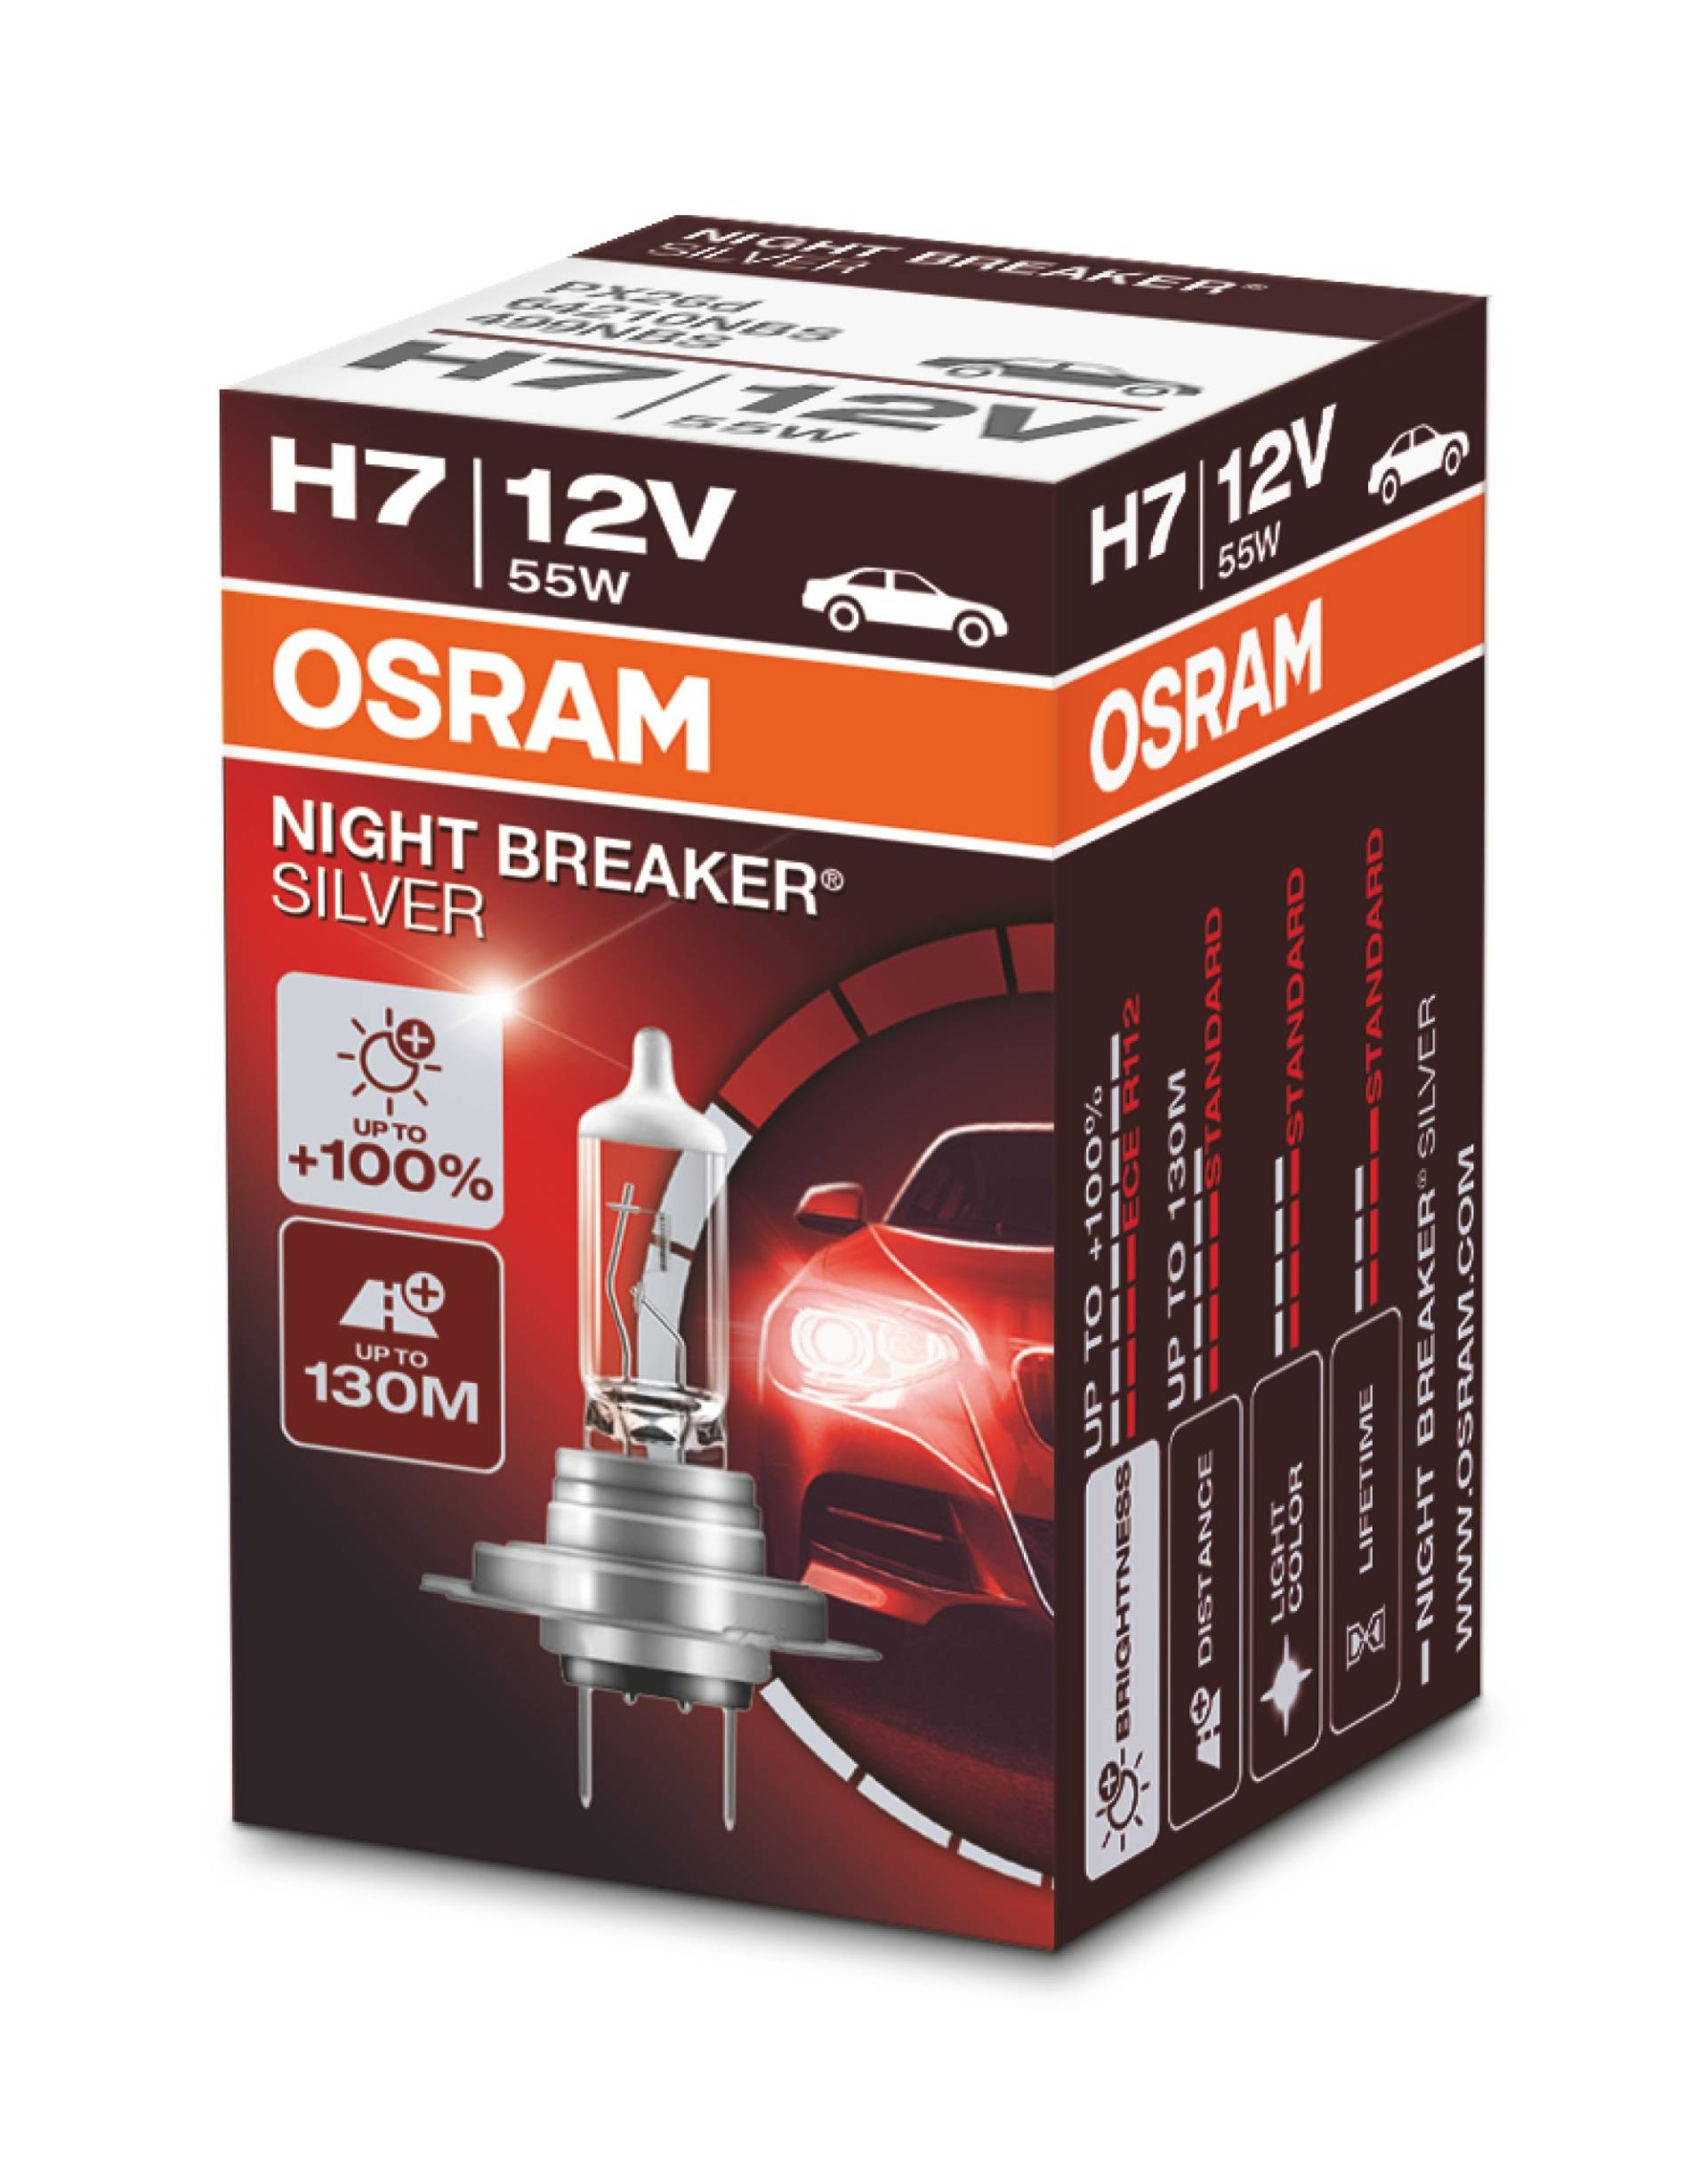 Osram Night Breaker Silver H7, +100% mehr Helligkeit, Halogen-Scheinwerferlampe, 64210NBS, 12V Pkw, Faltschachtel (1 Lampe) von Osram